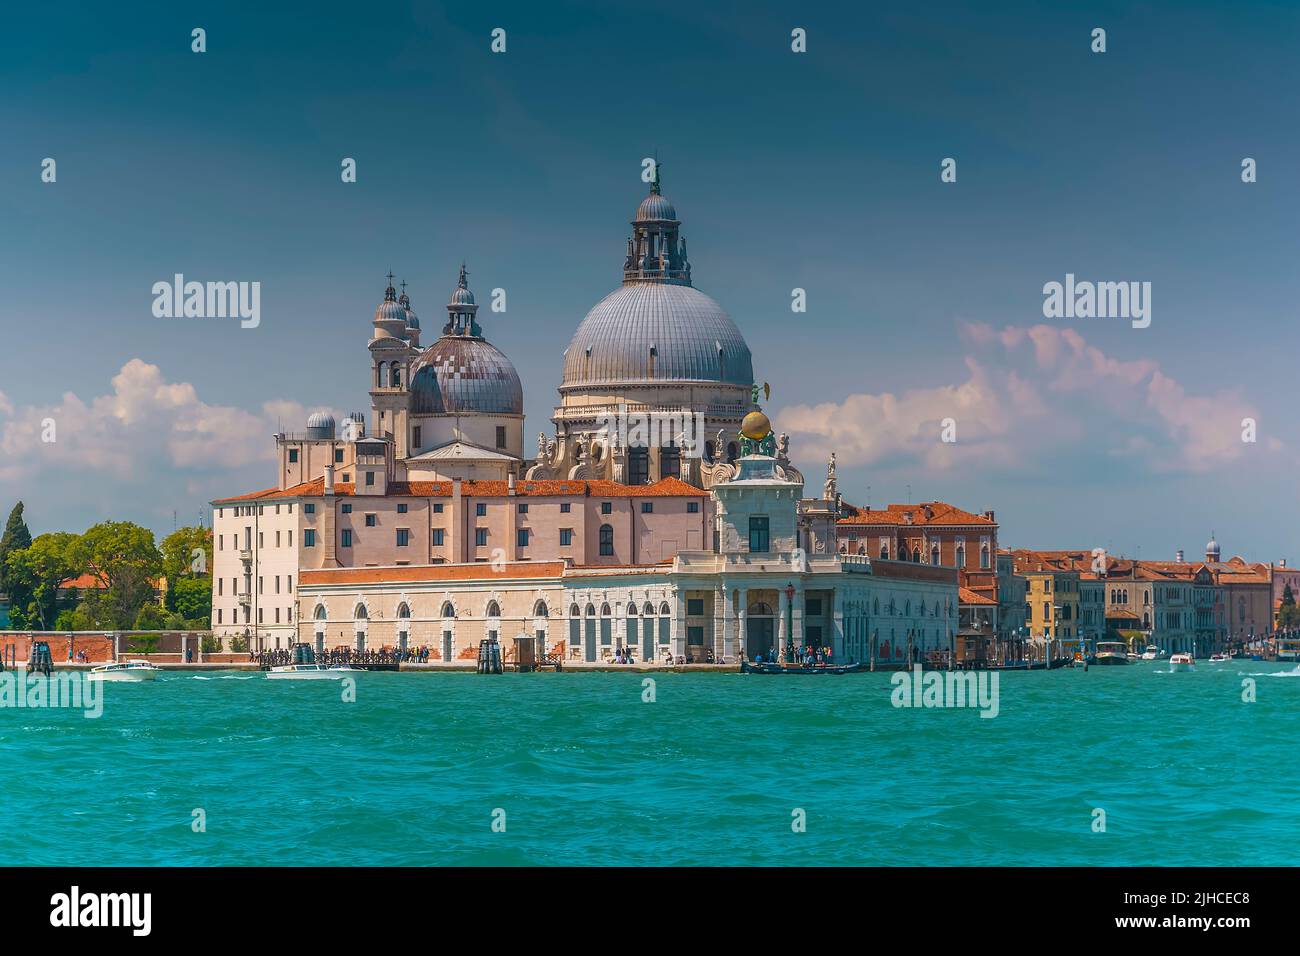 The famous Basilica Santa Maria della Salute in Venice, Italy Stock Photo